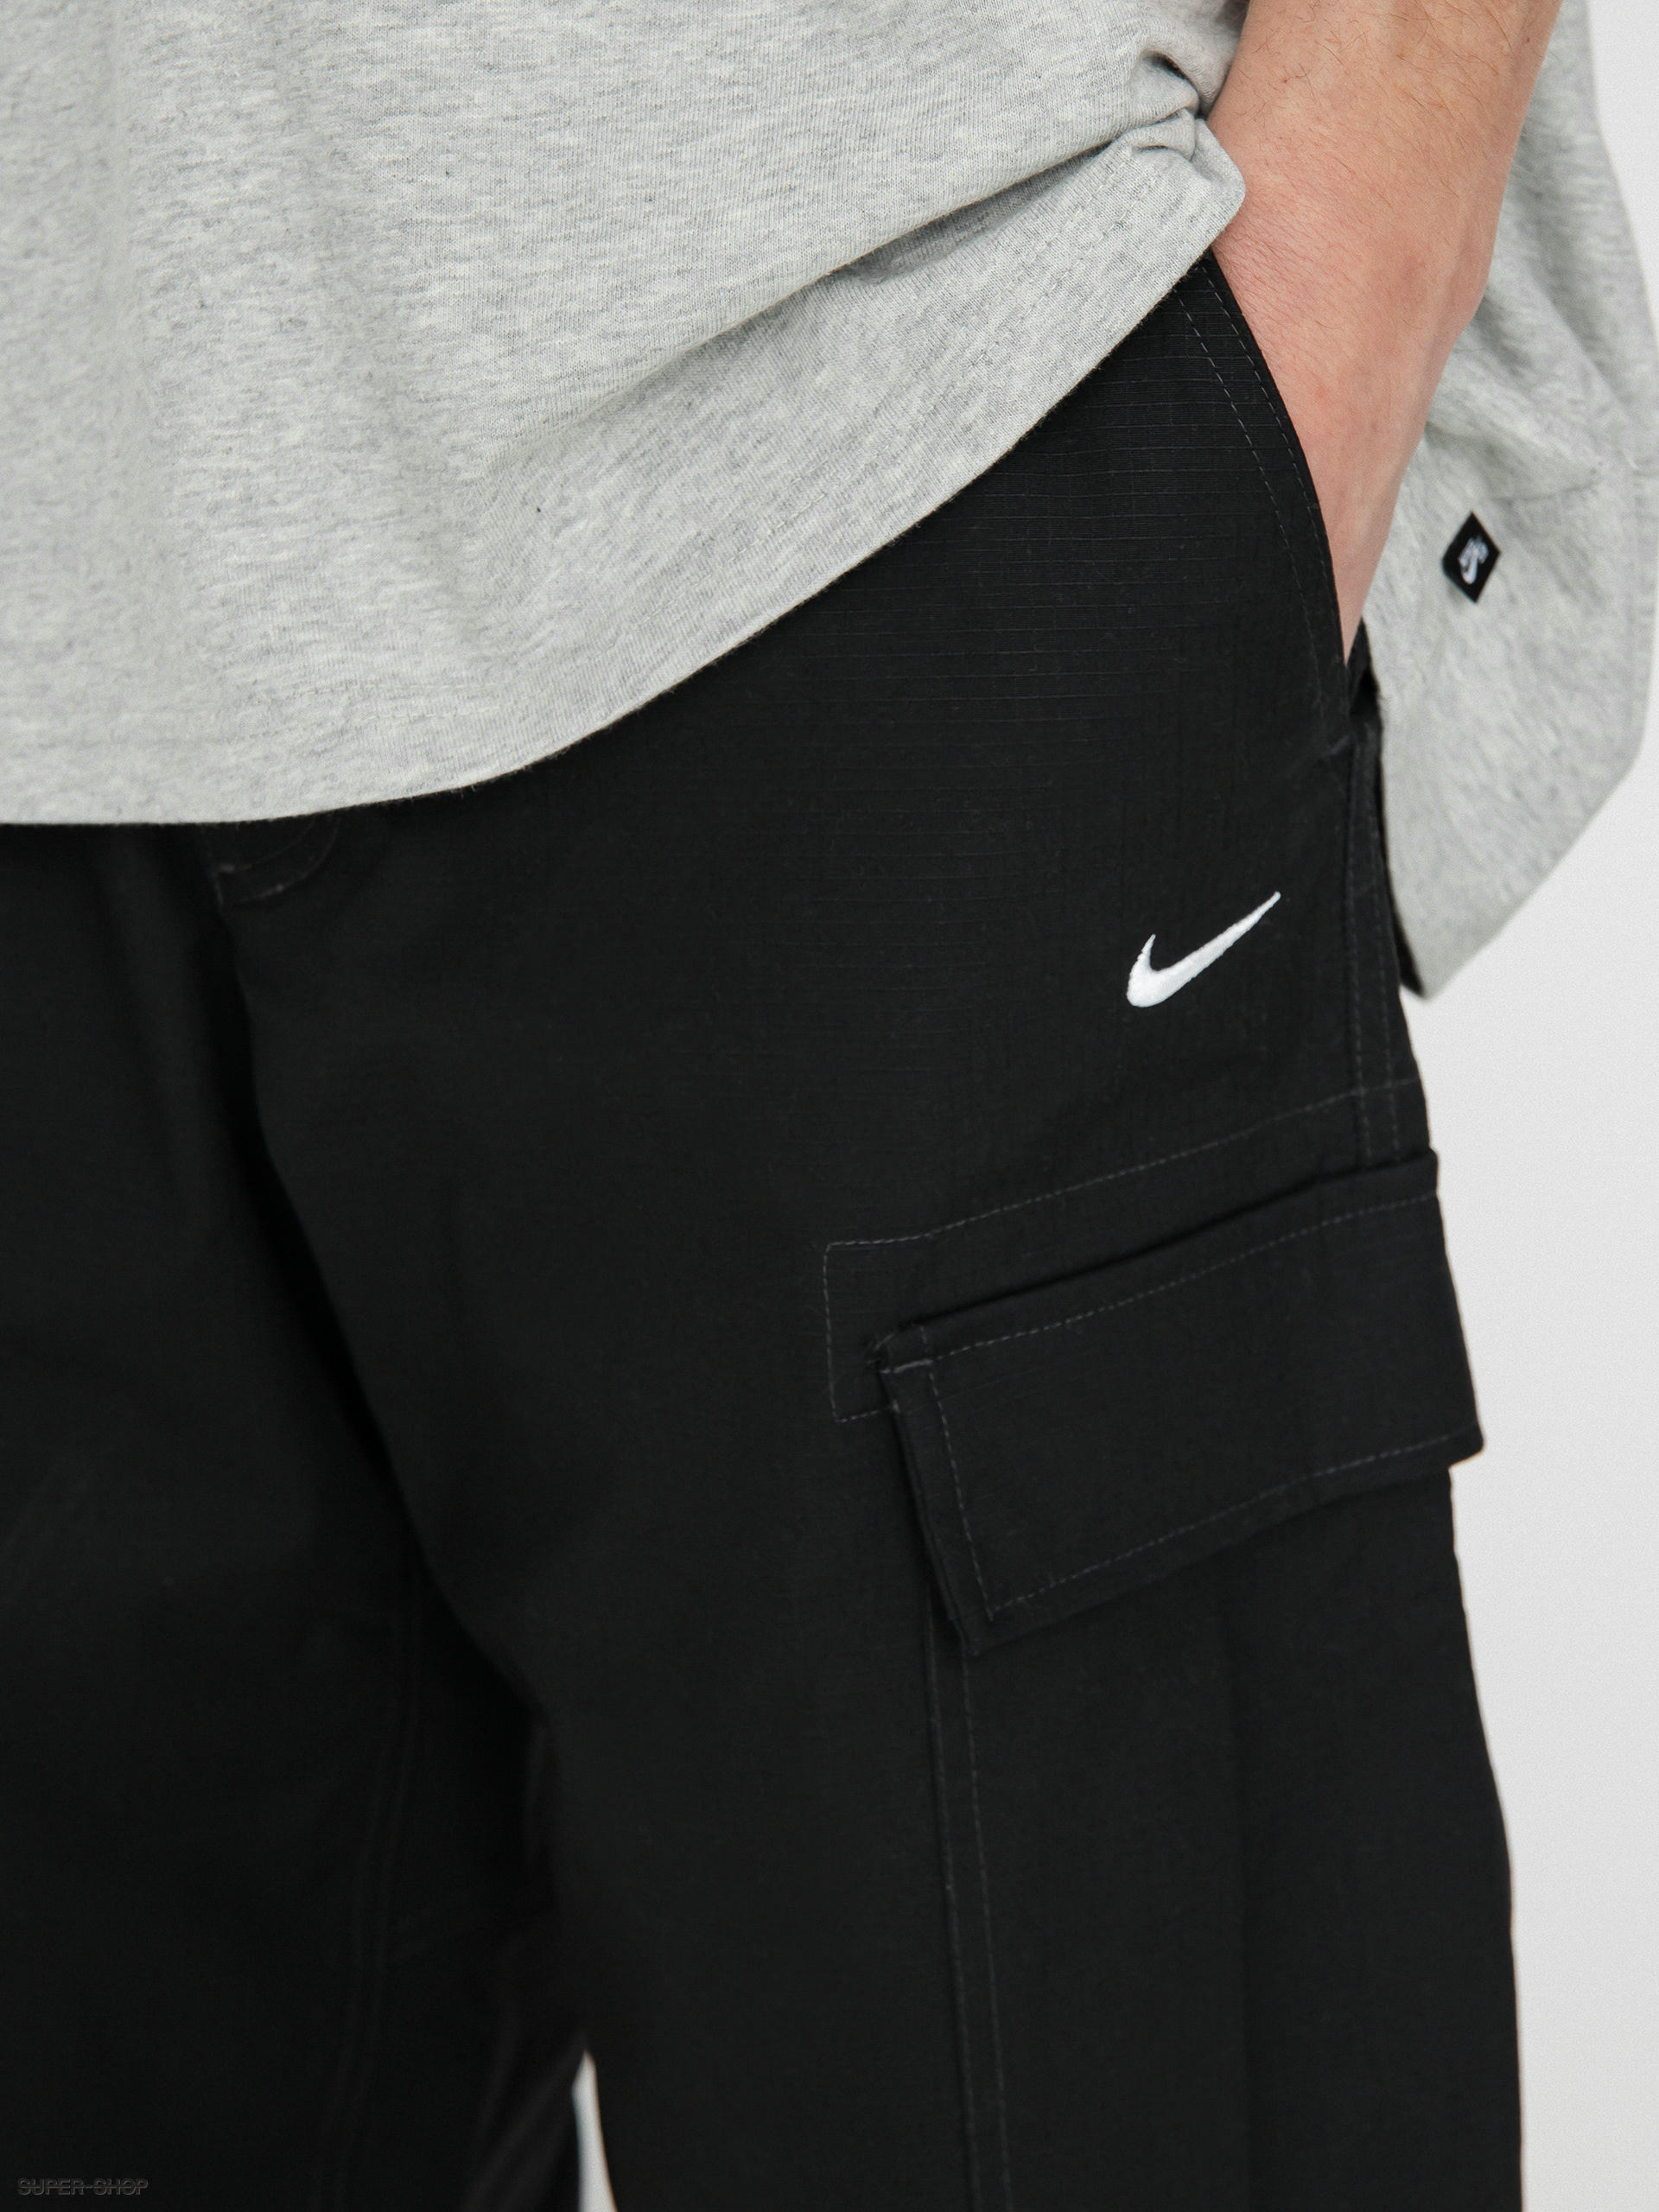 Mens Cargo Pants. Nike.com